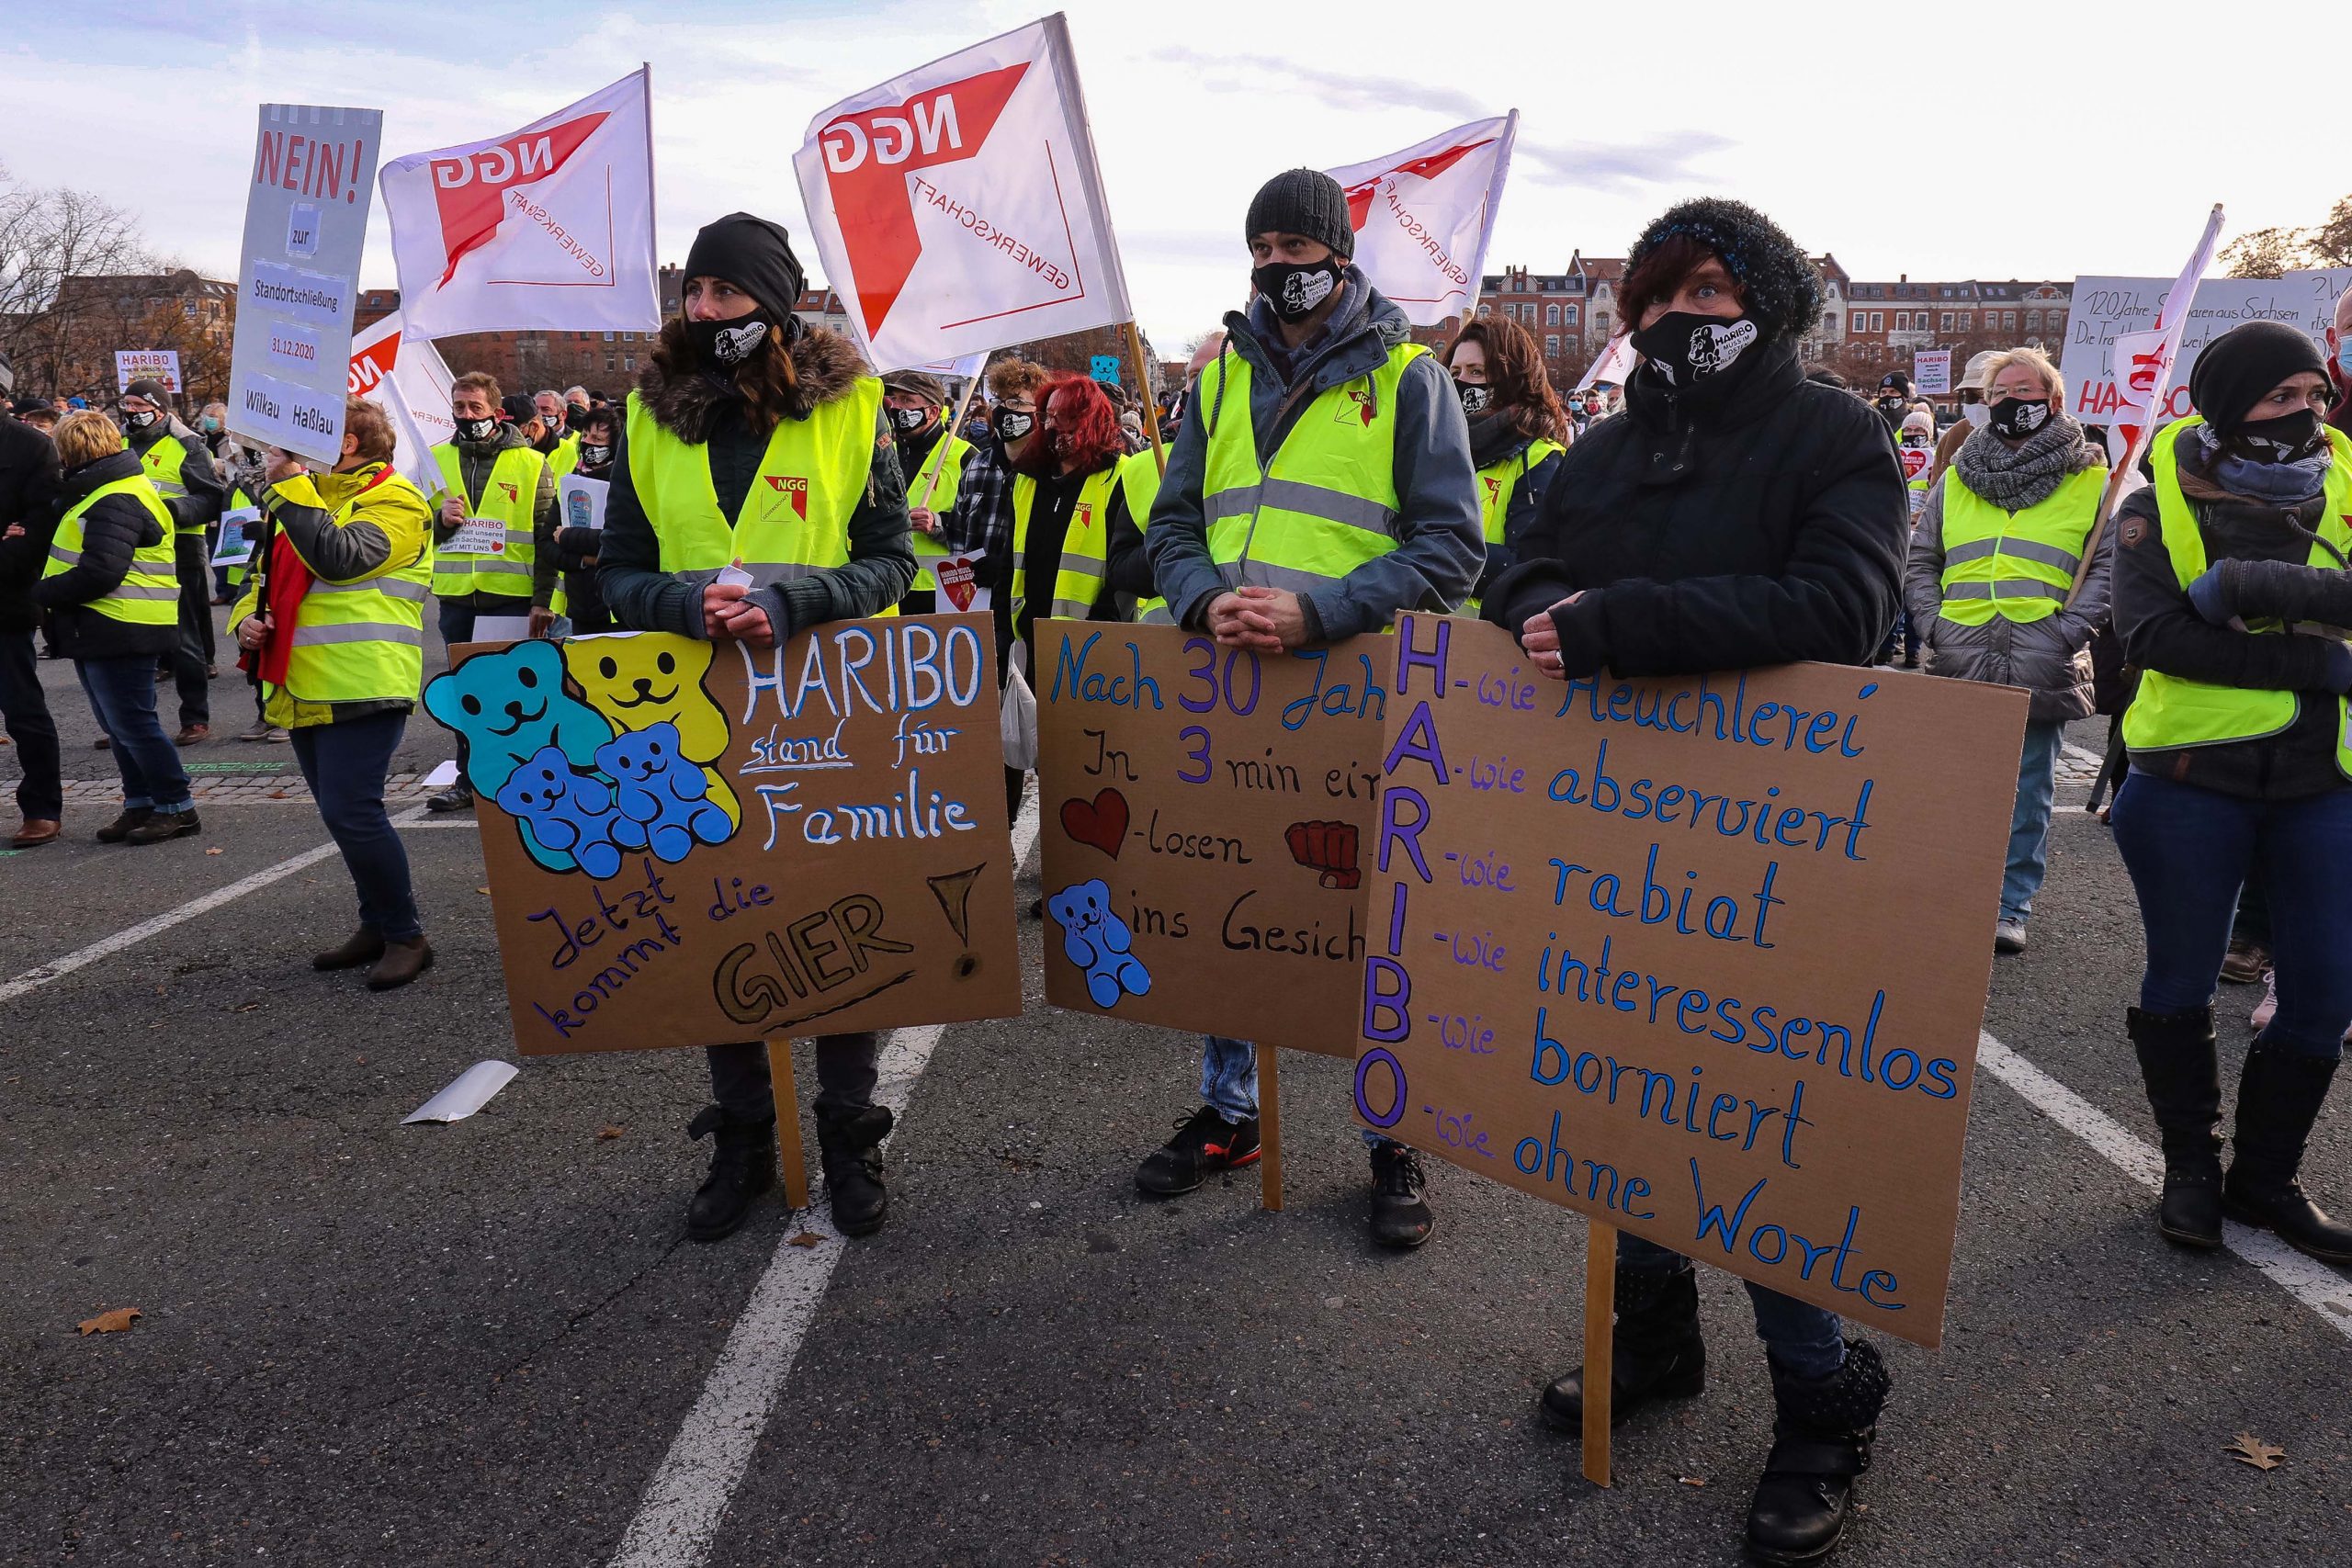 Beberapa ratus pekerja Haribo dan pendukungnya memprotes penutupan pabrik Haribo di Wilkau- Haßlau (21 Nov 2020). Dokumentasi: The NGG Union